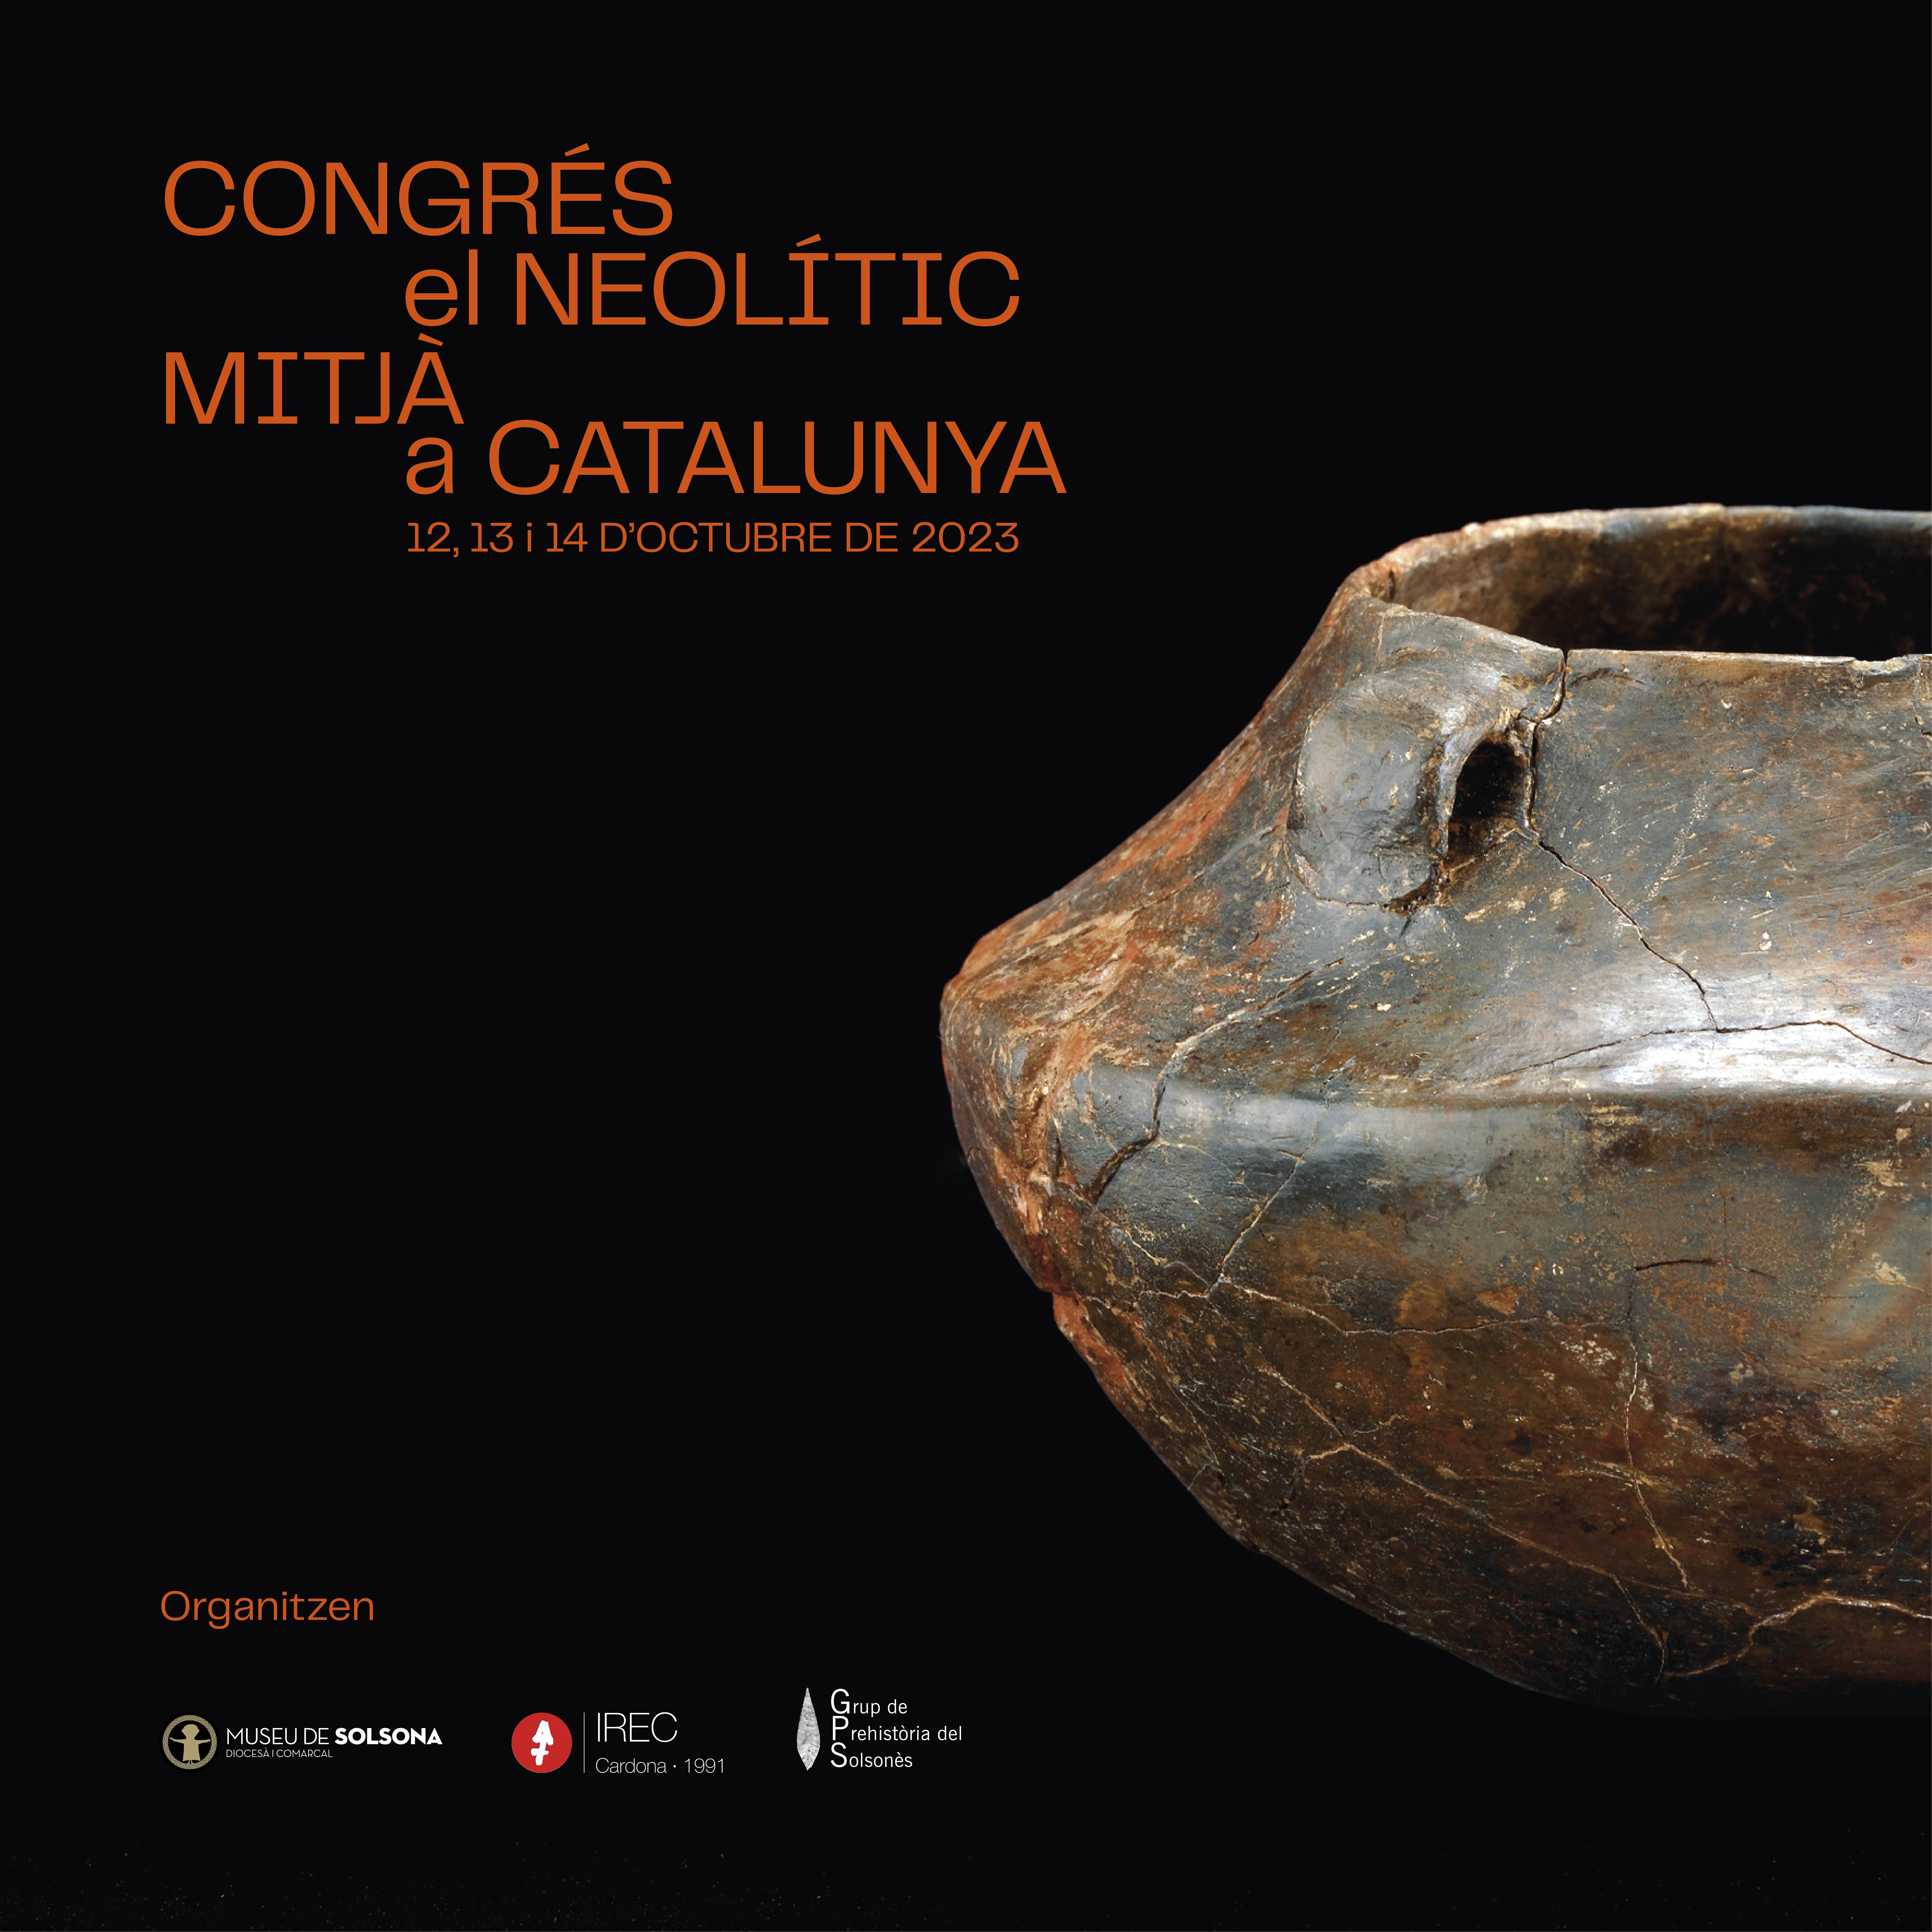 Congrés del Neolític Mitjà a Catalunya, del 12 al 14 d'octubre